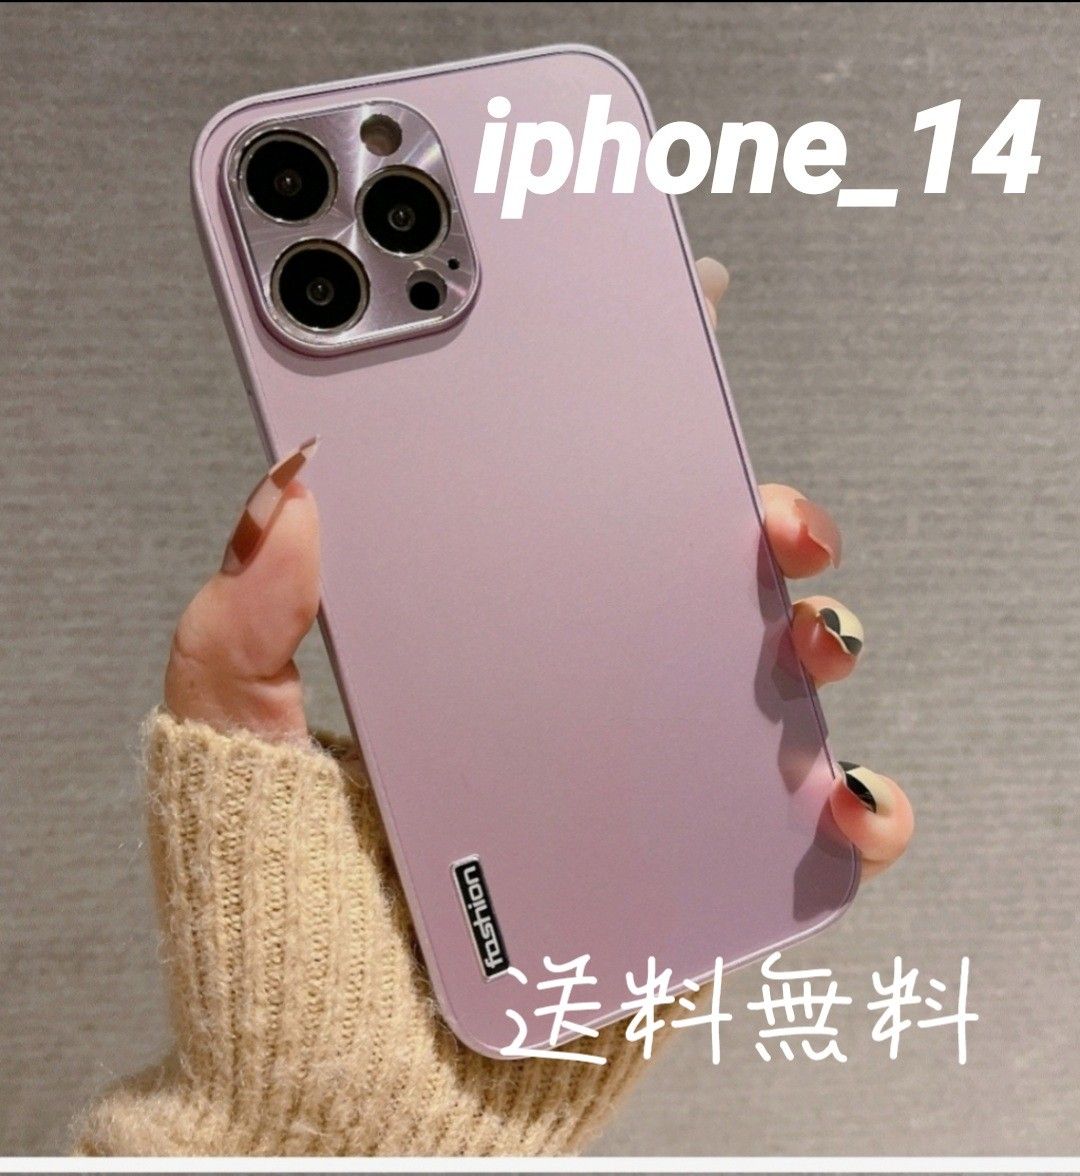 iPhone 14用ケースピンク薄型軽量ハードカバーサラサラマット素材シンプル カバー